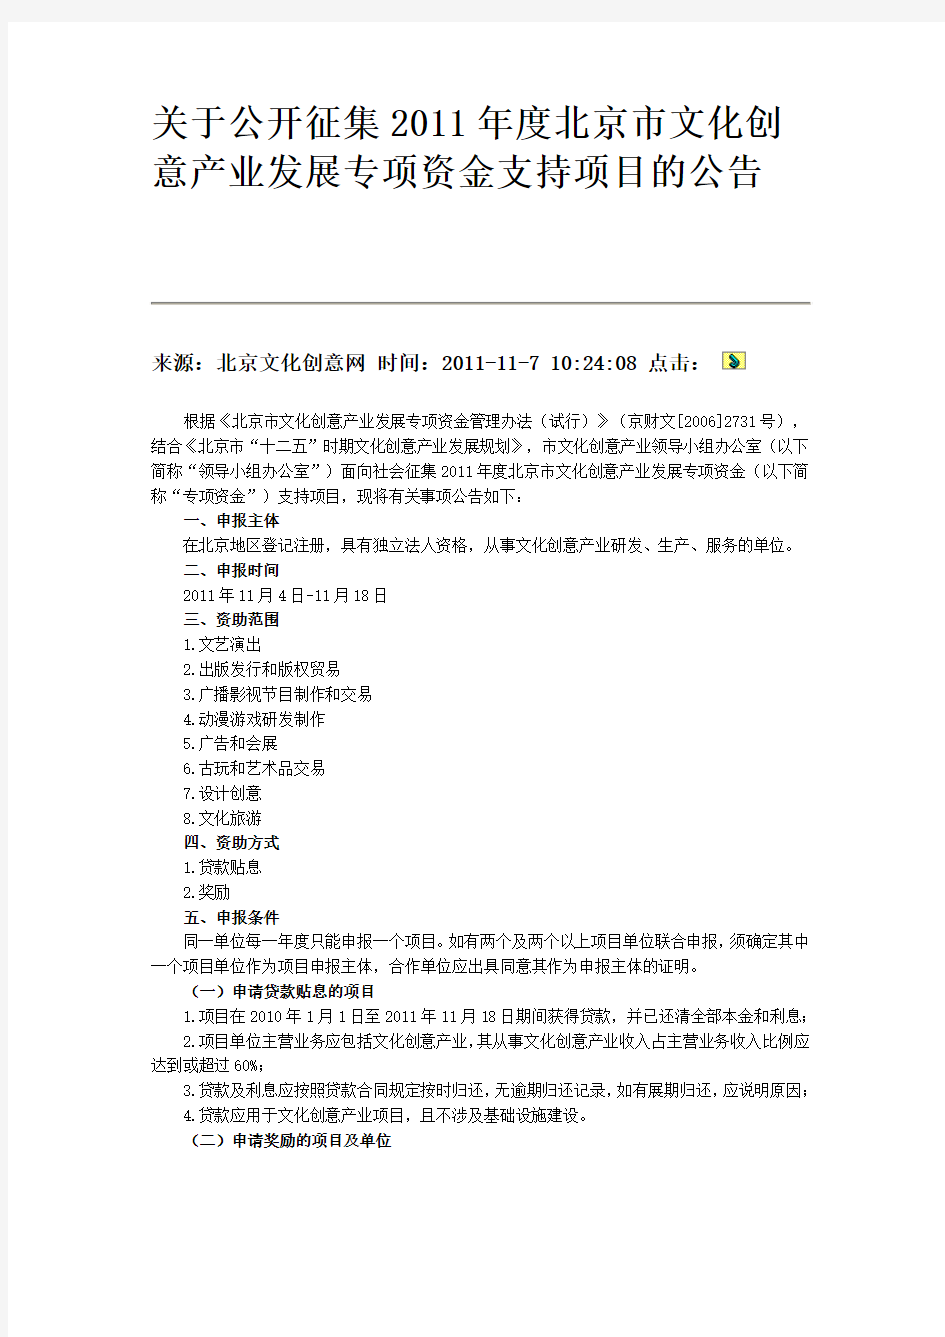 关于公开征集2011年度北京市文化创意产业发展专项资金支持项目的公告